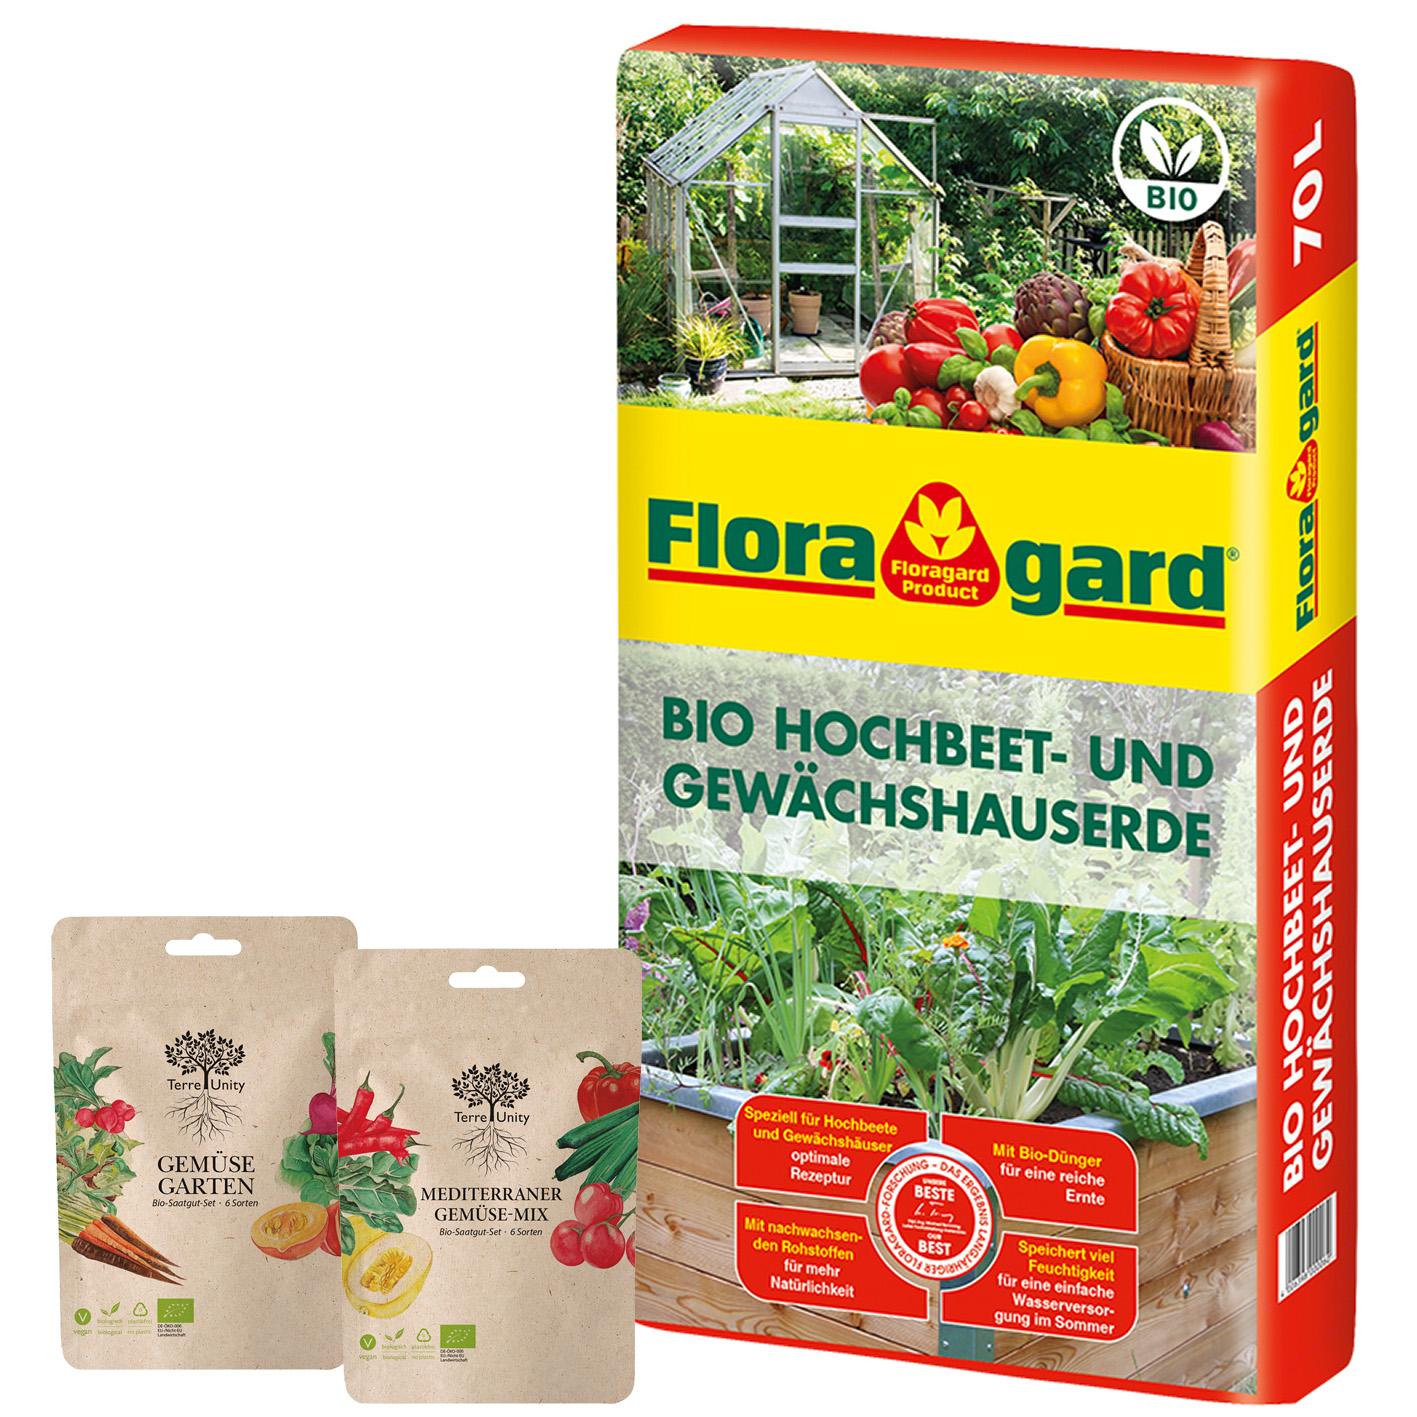 Floragard Hochbeet u. Gewächshauserde 70 L & Terre Unity Bio Gemüse- und Mediterran-Gemüse Samenset